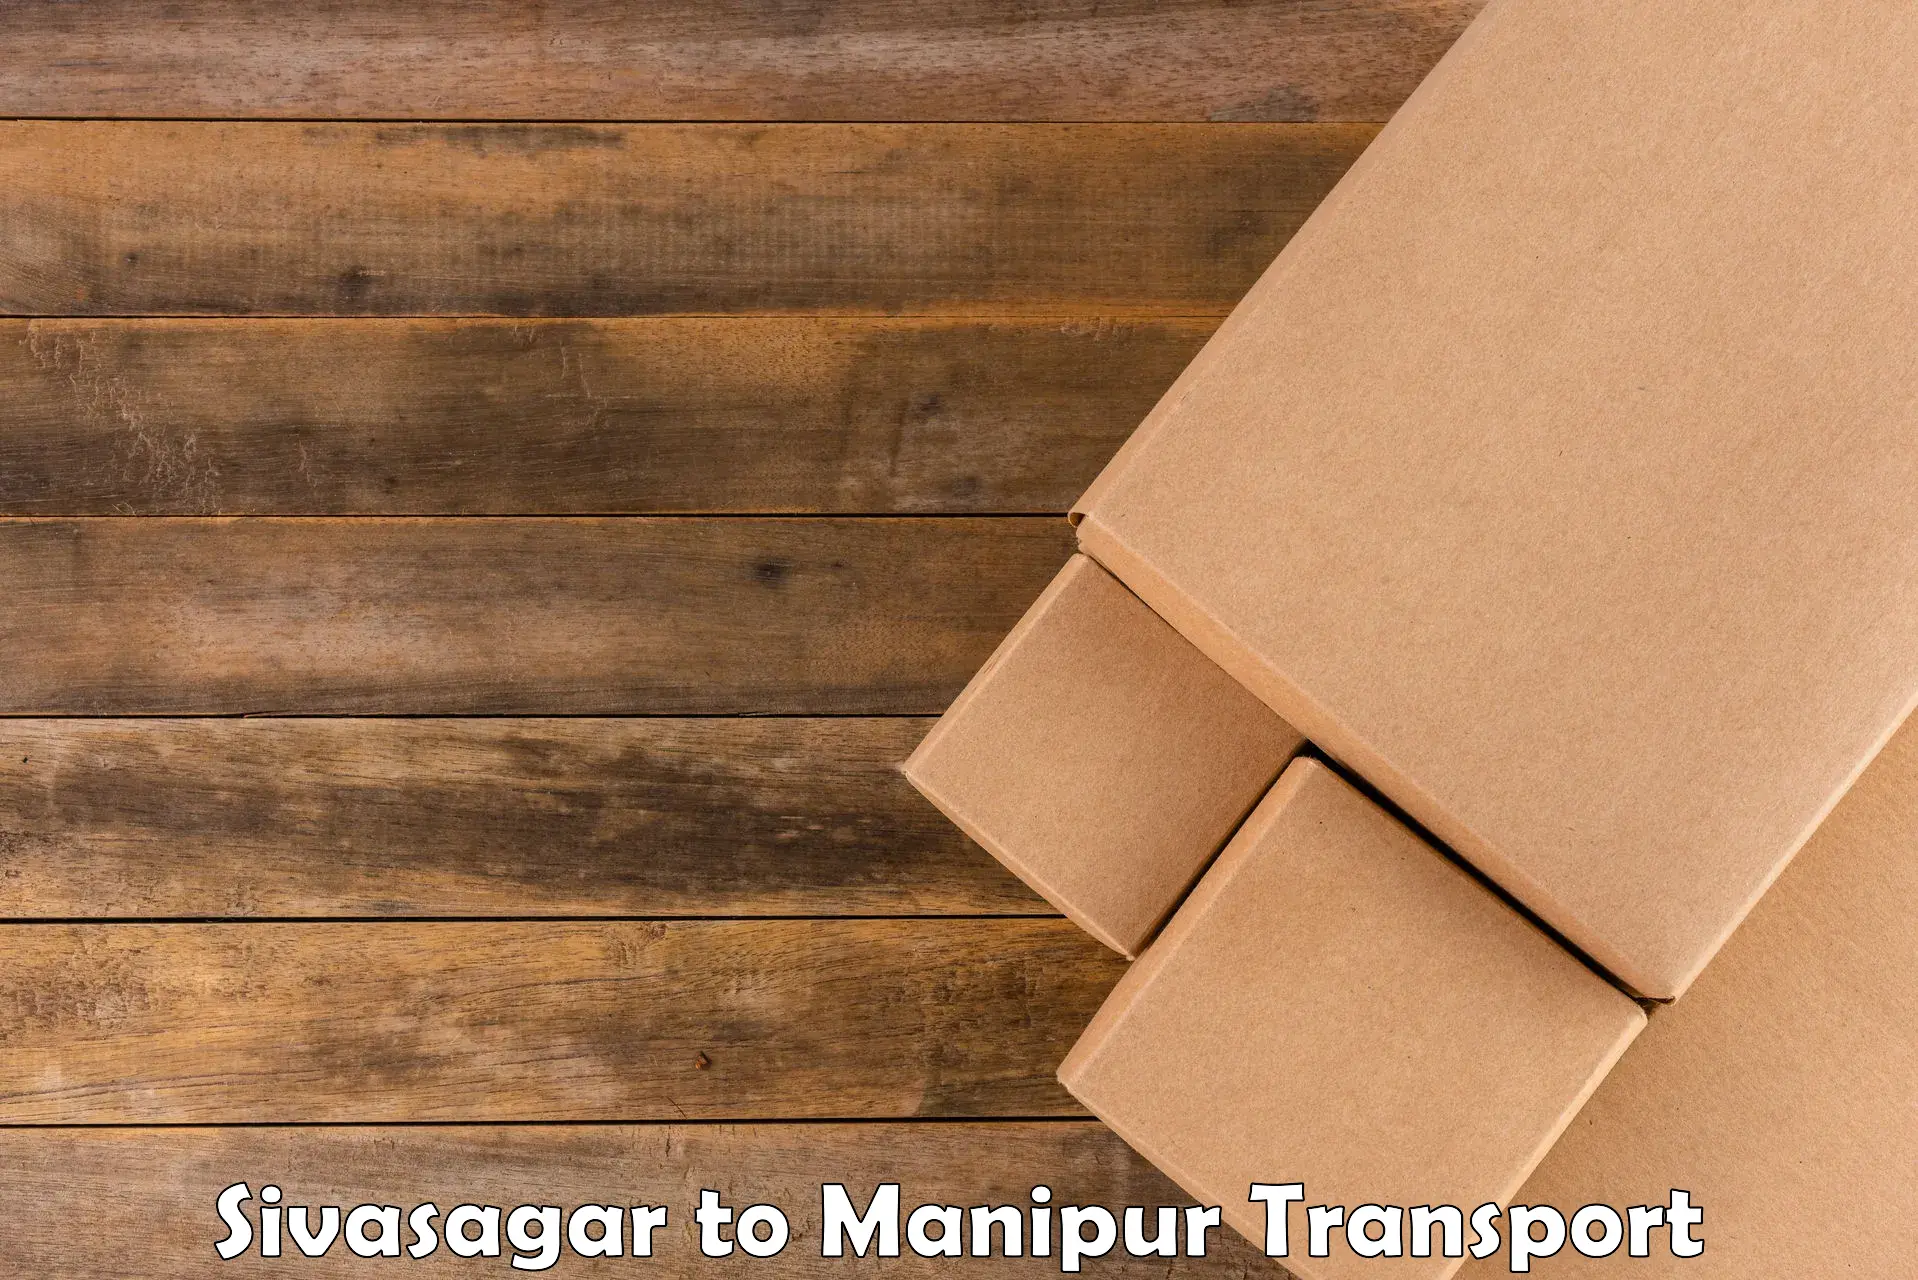 Cargo transport services Sivasagar to Senapati